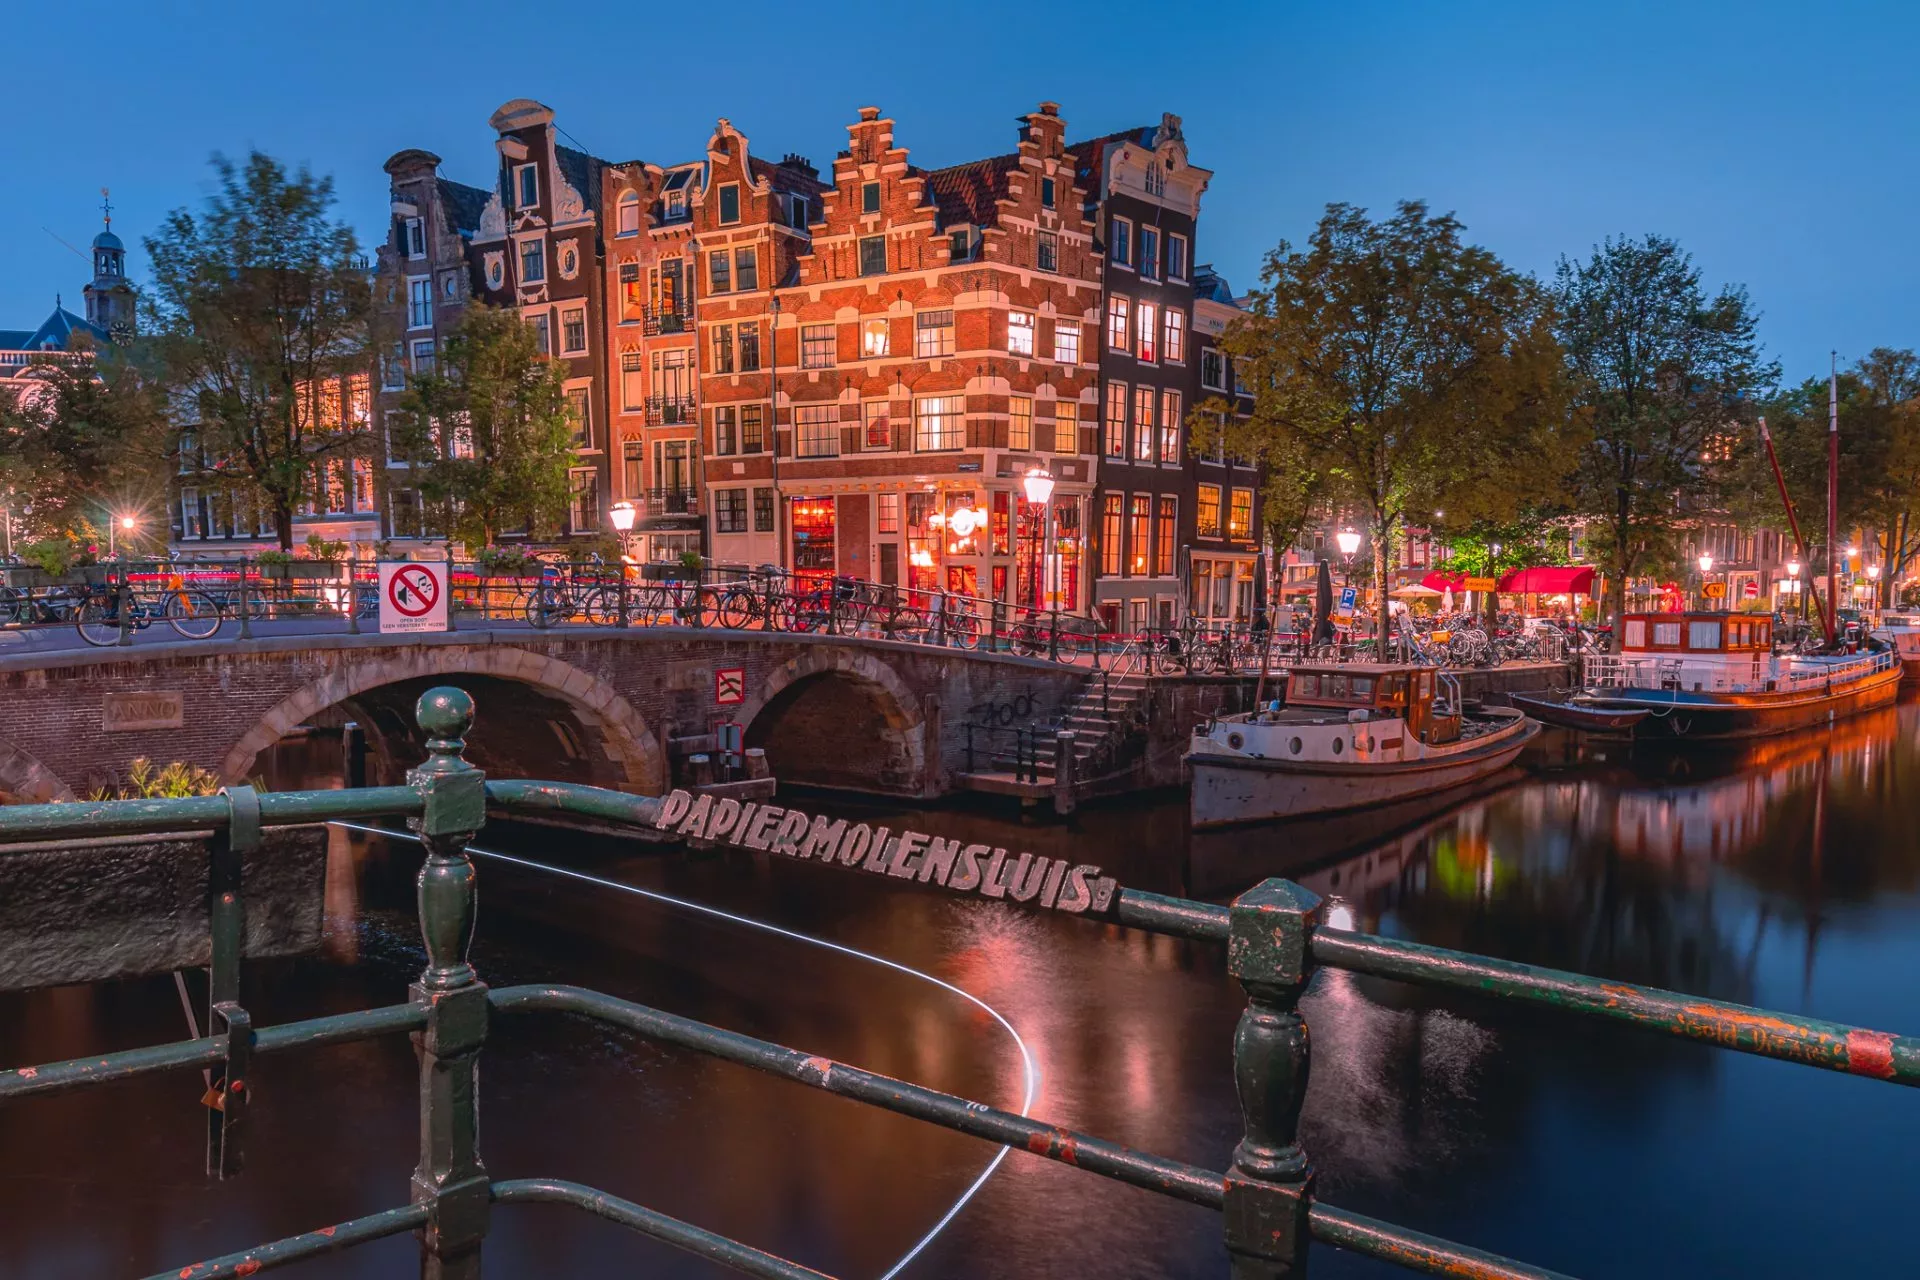 Het blauwe uurtje aan de Papiermolensluis in Amsterdam